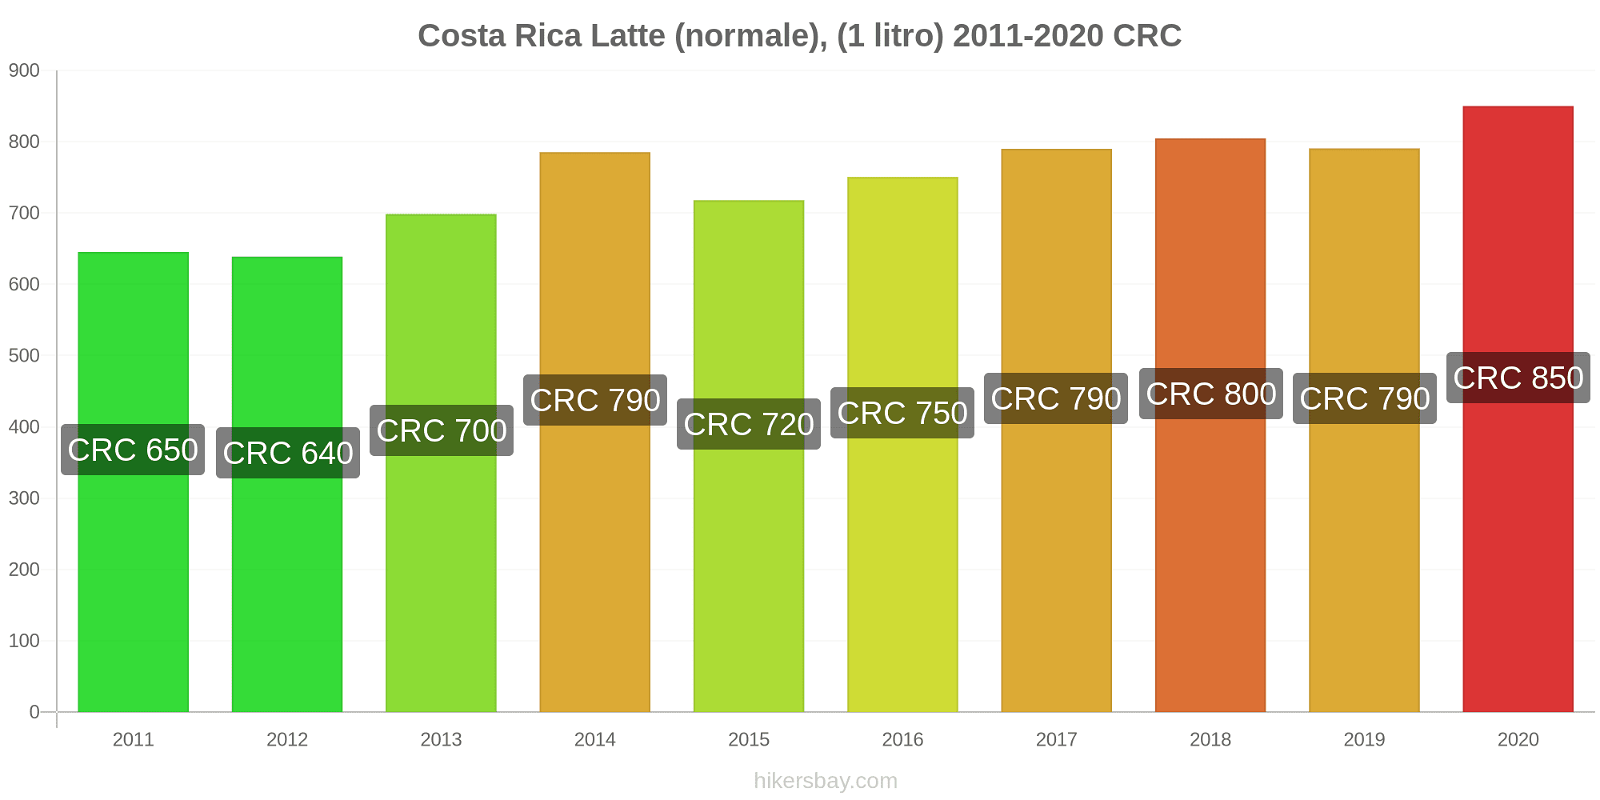 Costa Rica variazioni di prezzo Latte (1 litro) hikersbay.com